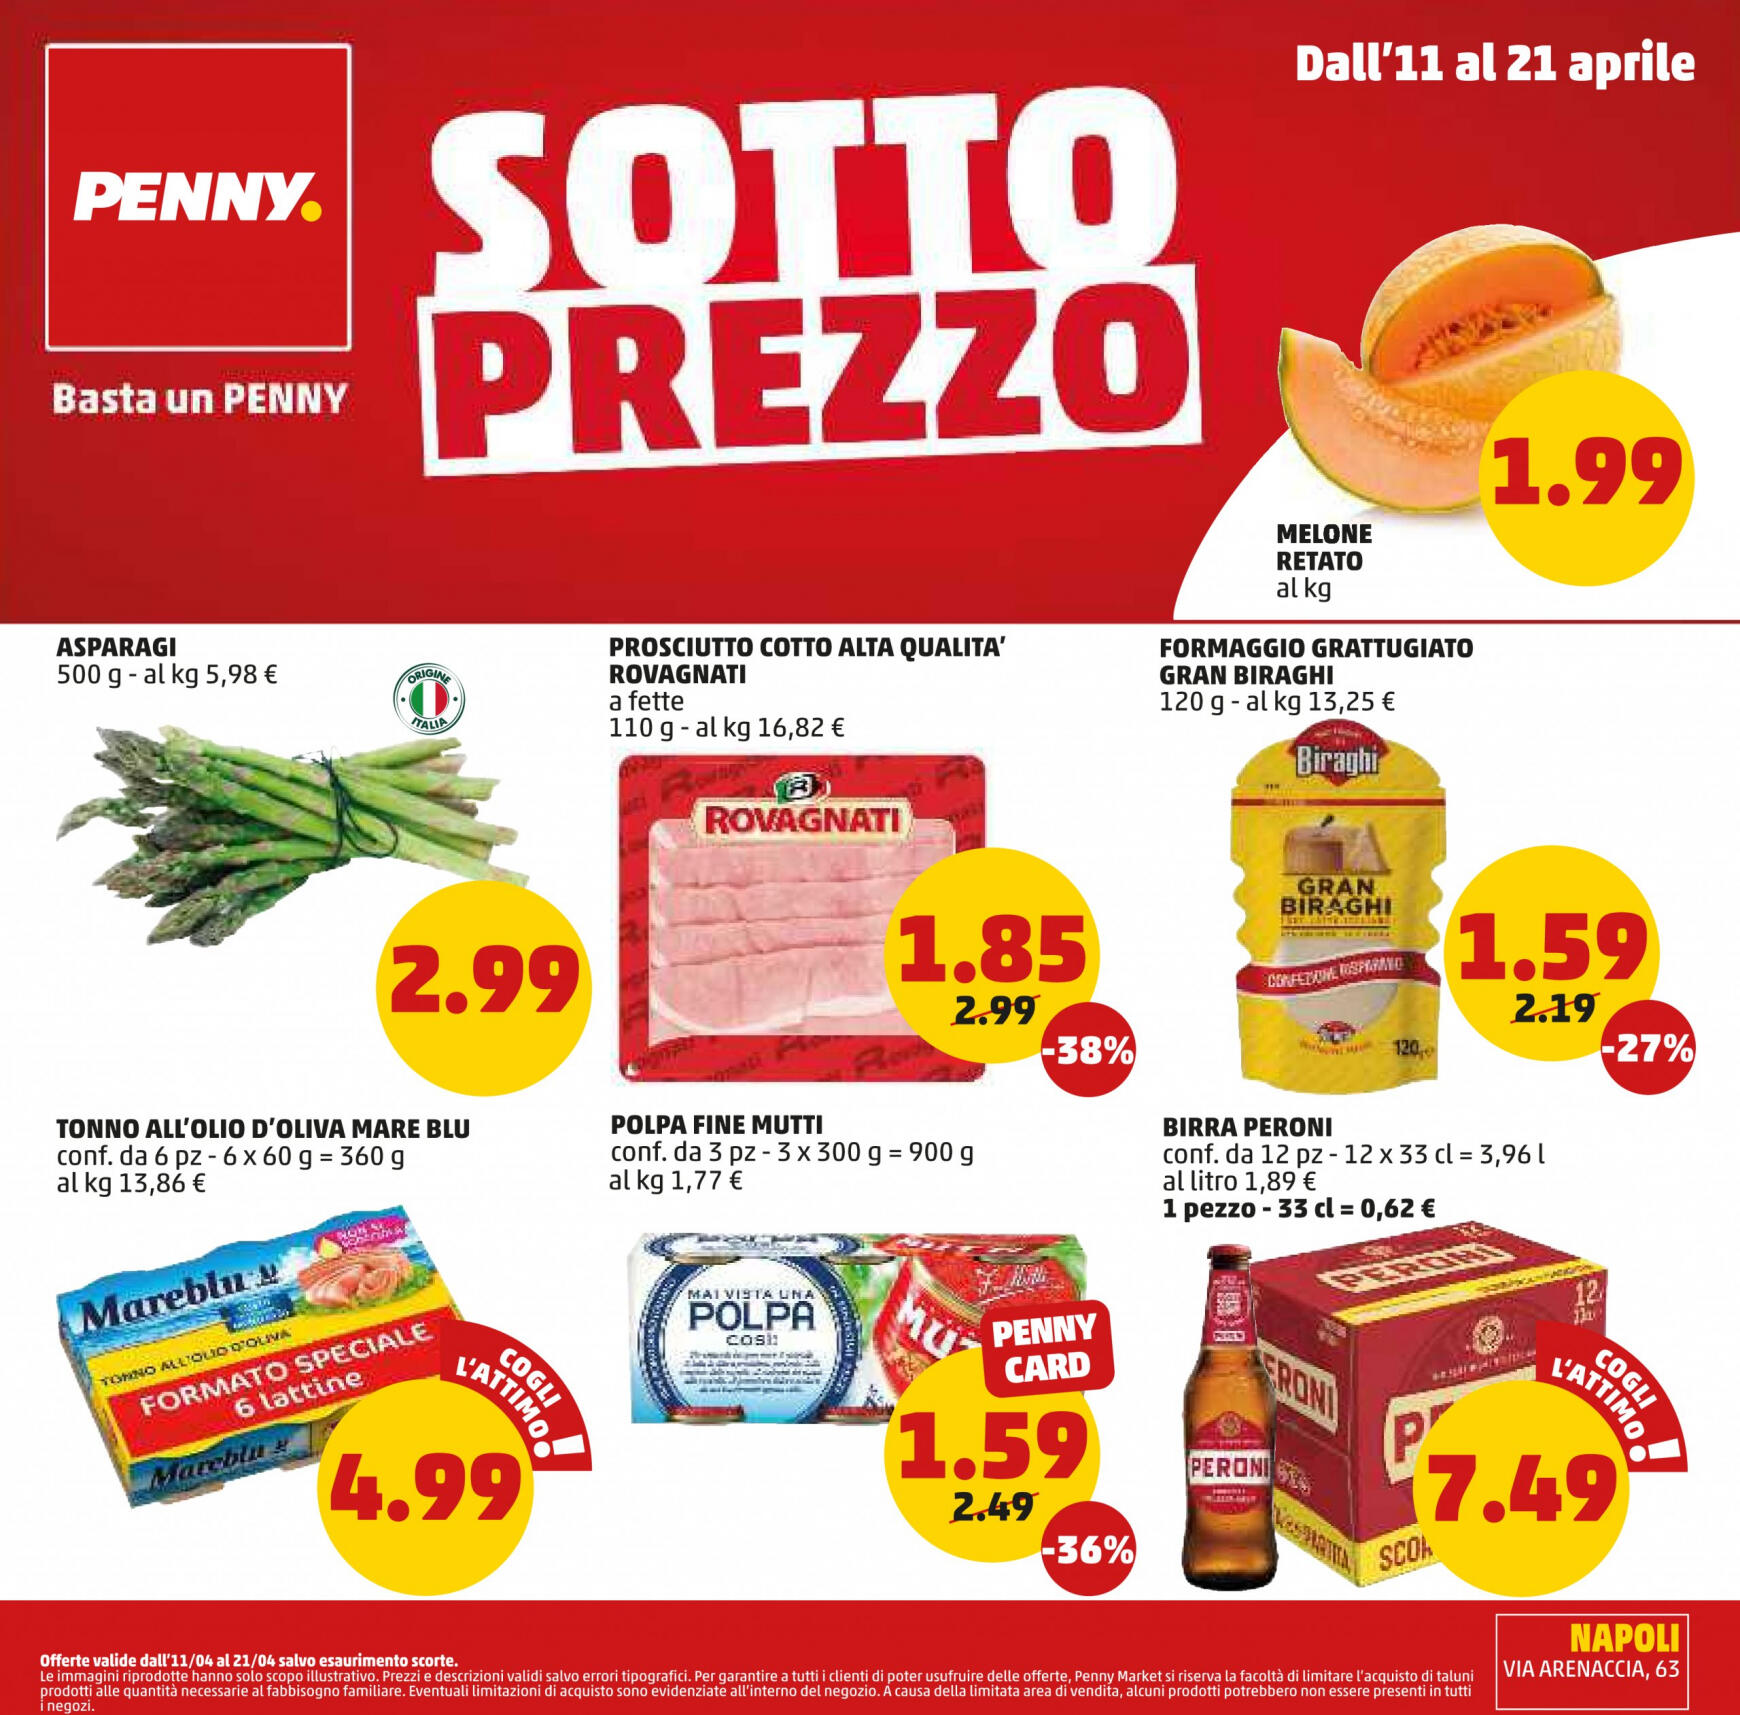 penny - Nuovo volantino PENNY 11.04. - 21.04.